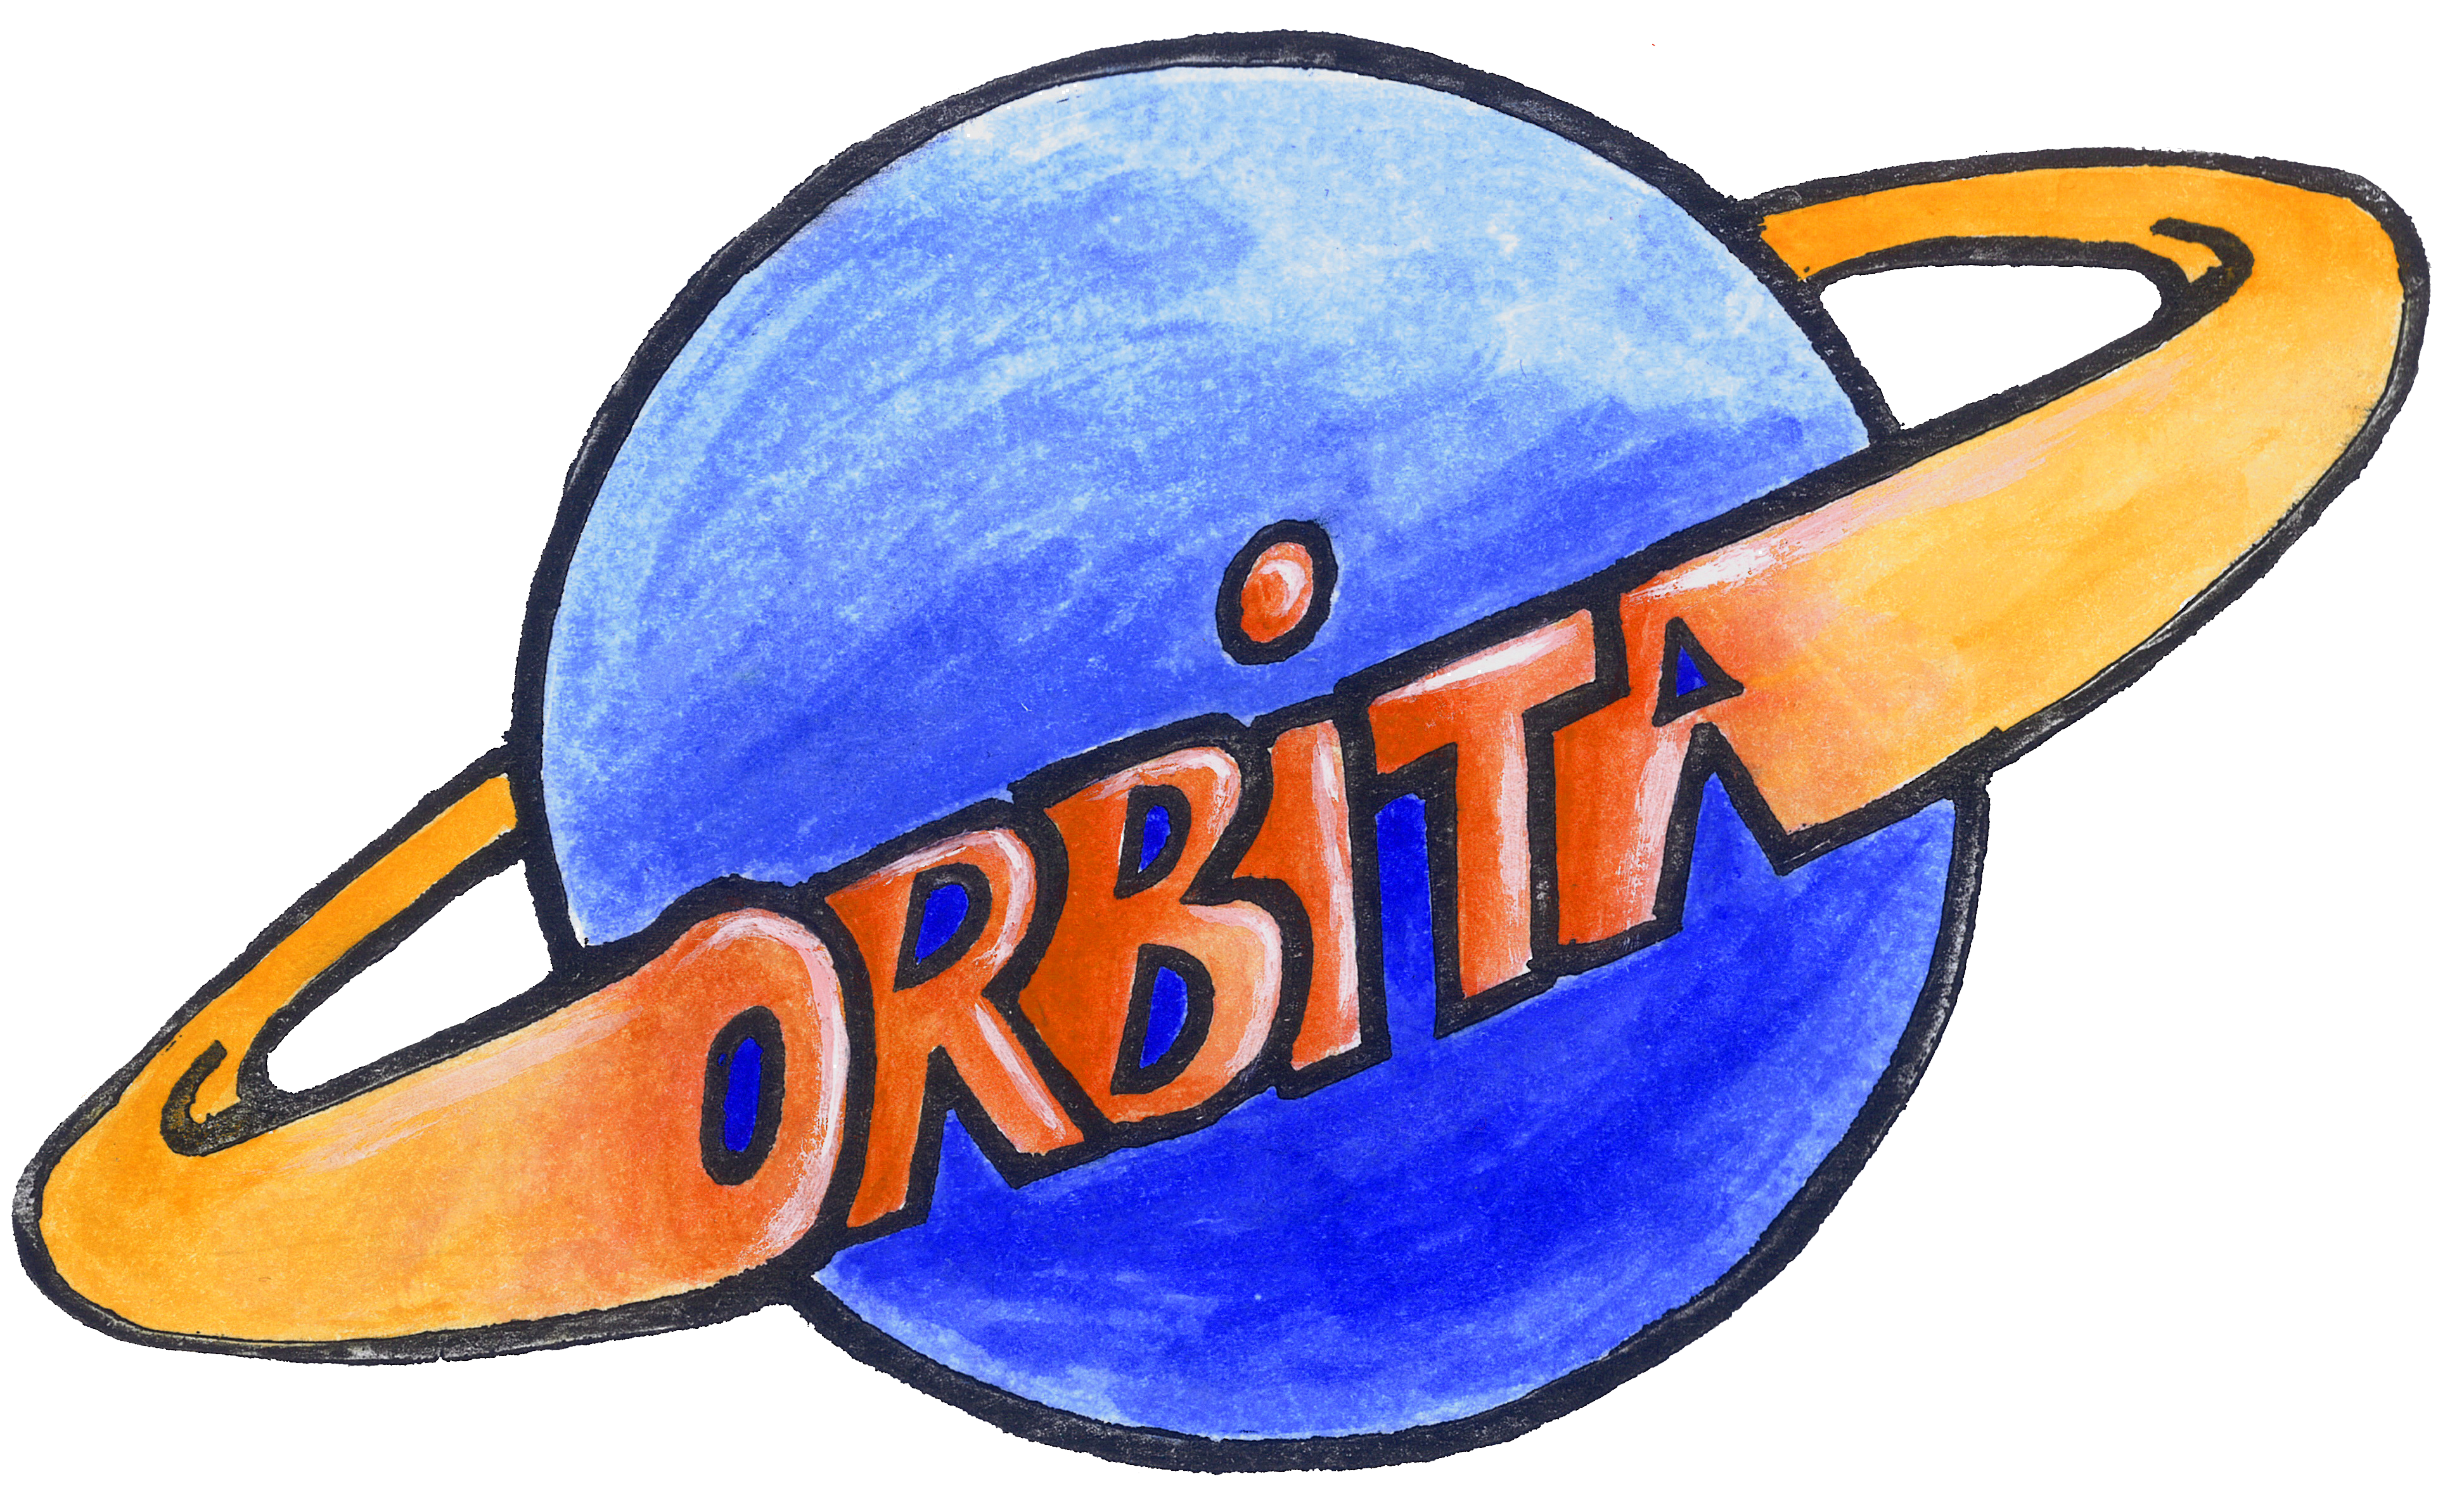 Zavod Orbita